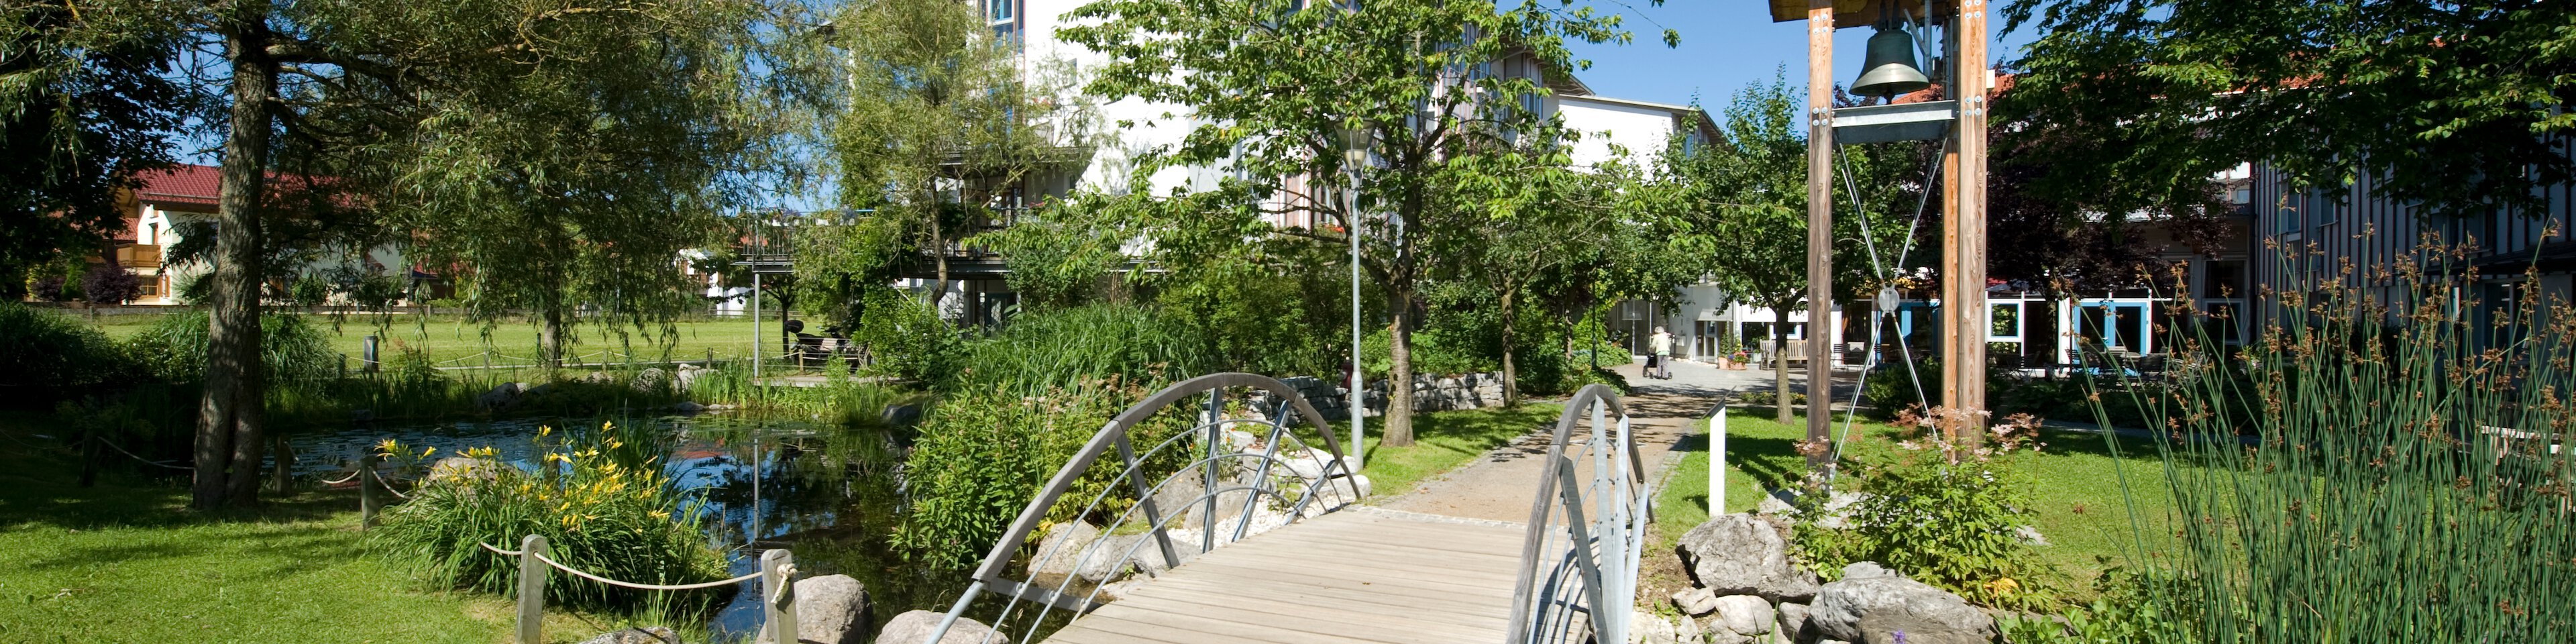 Gartenanlage mit Brücke | © © Photographien Thomas Klinger, www.atelierklinger.de